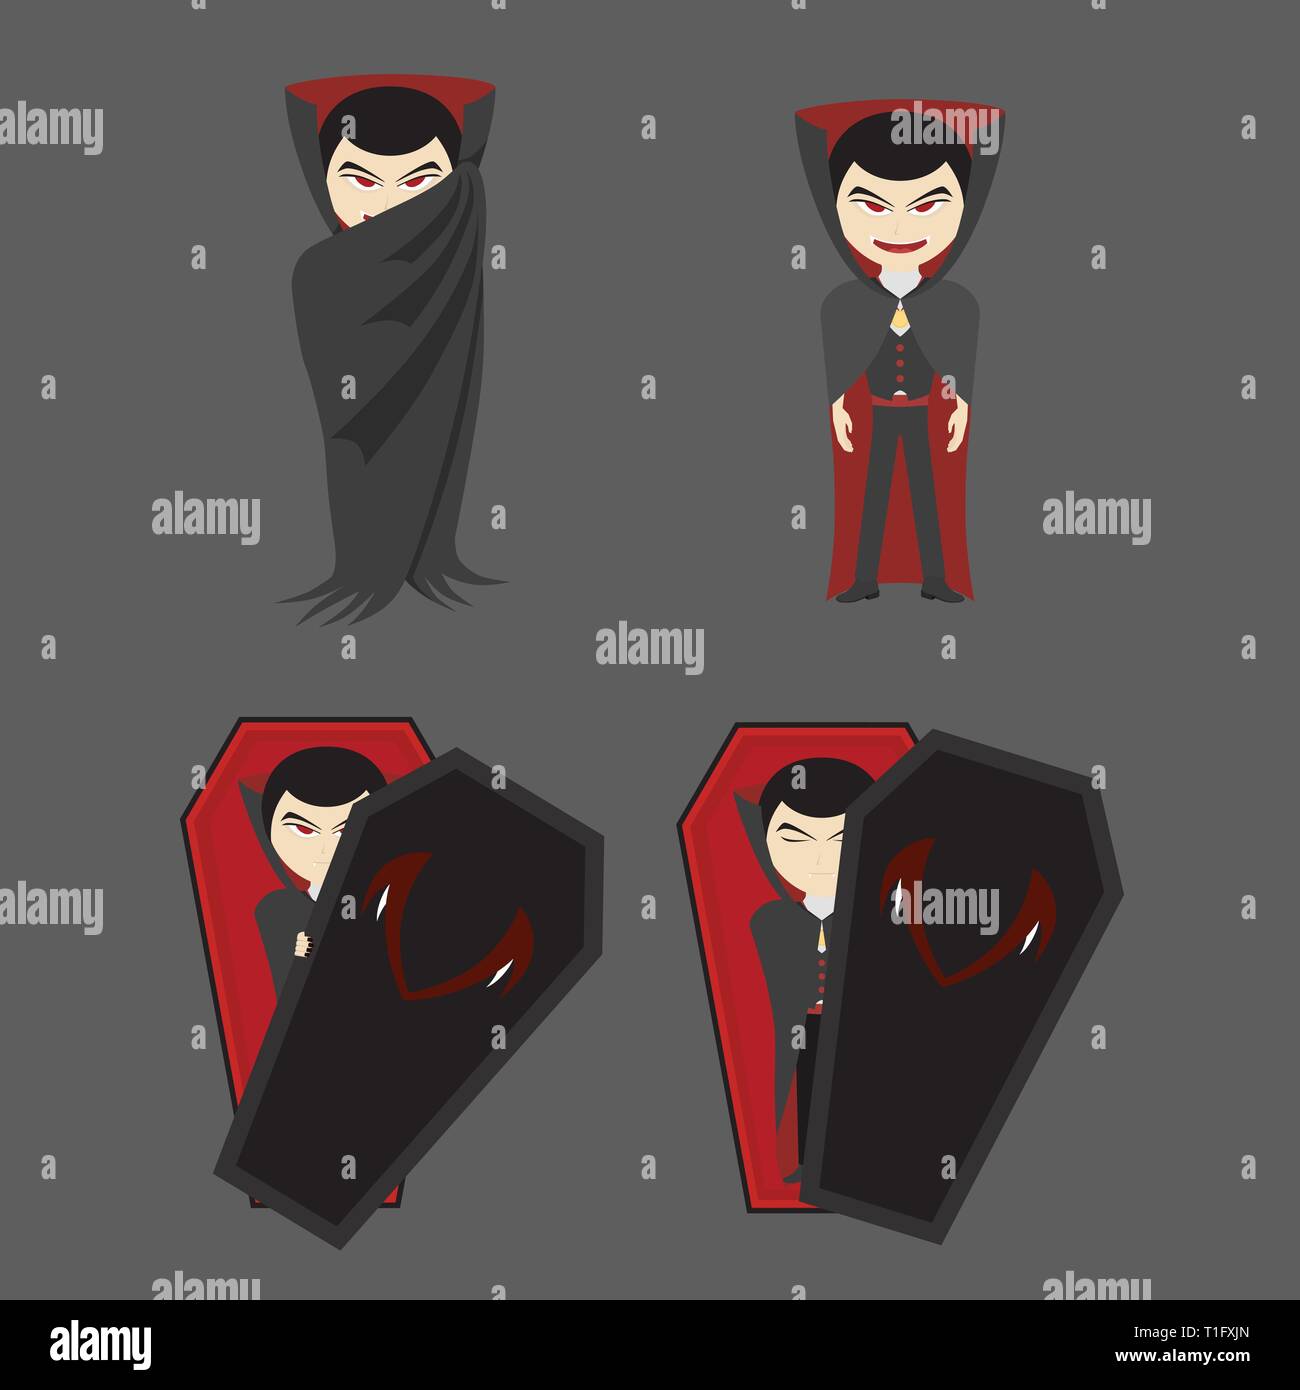 Eine Einstellung der Vampir mit roten Augen, die schwarzen Roben und Särge für eine Halloween Party, Vampir Illustration, flachen Design verwenden Stock Vektor